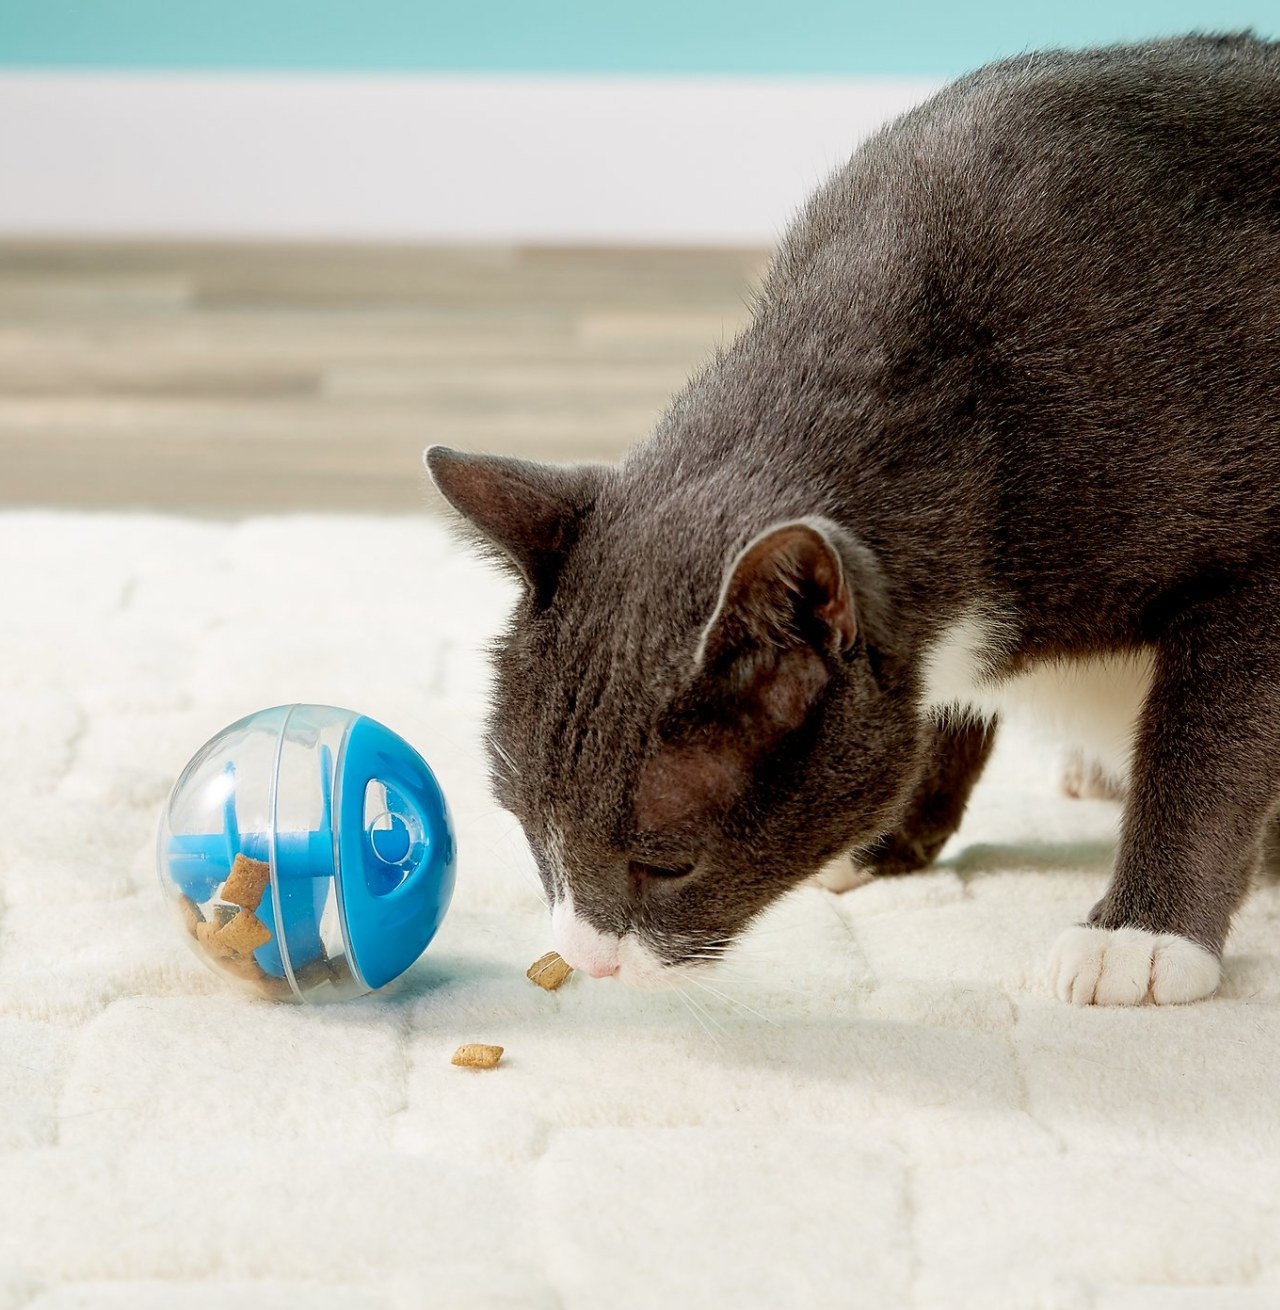 cat eating treats from treat ball